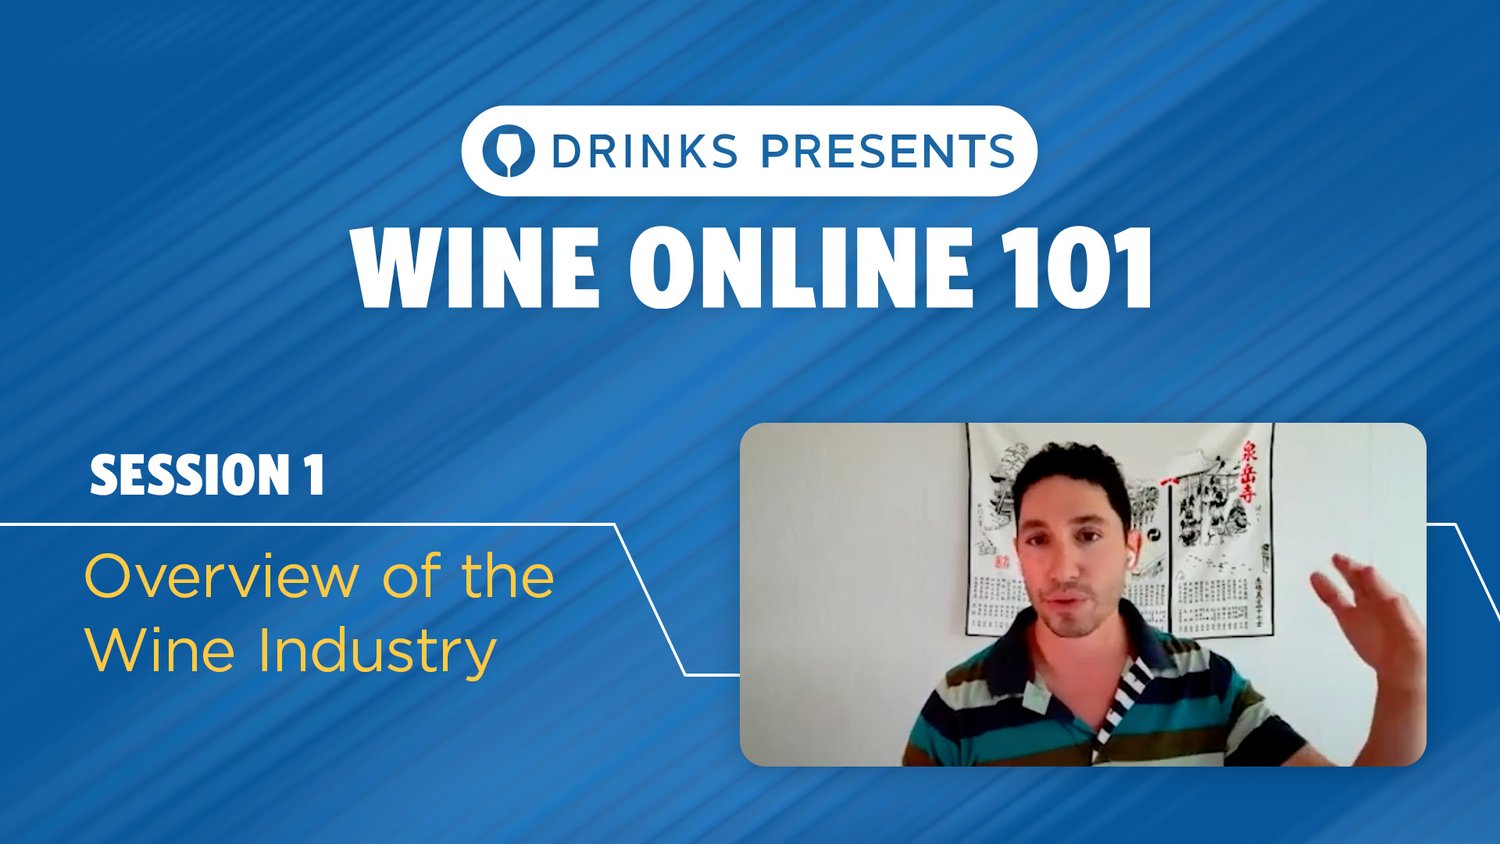 drinks-wine-online-101-title-slide-session-01